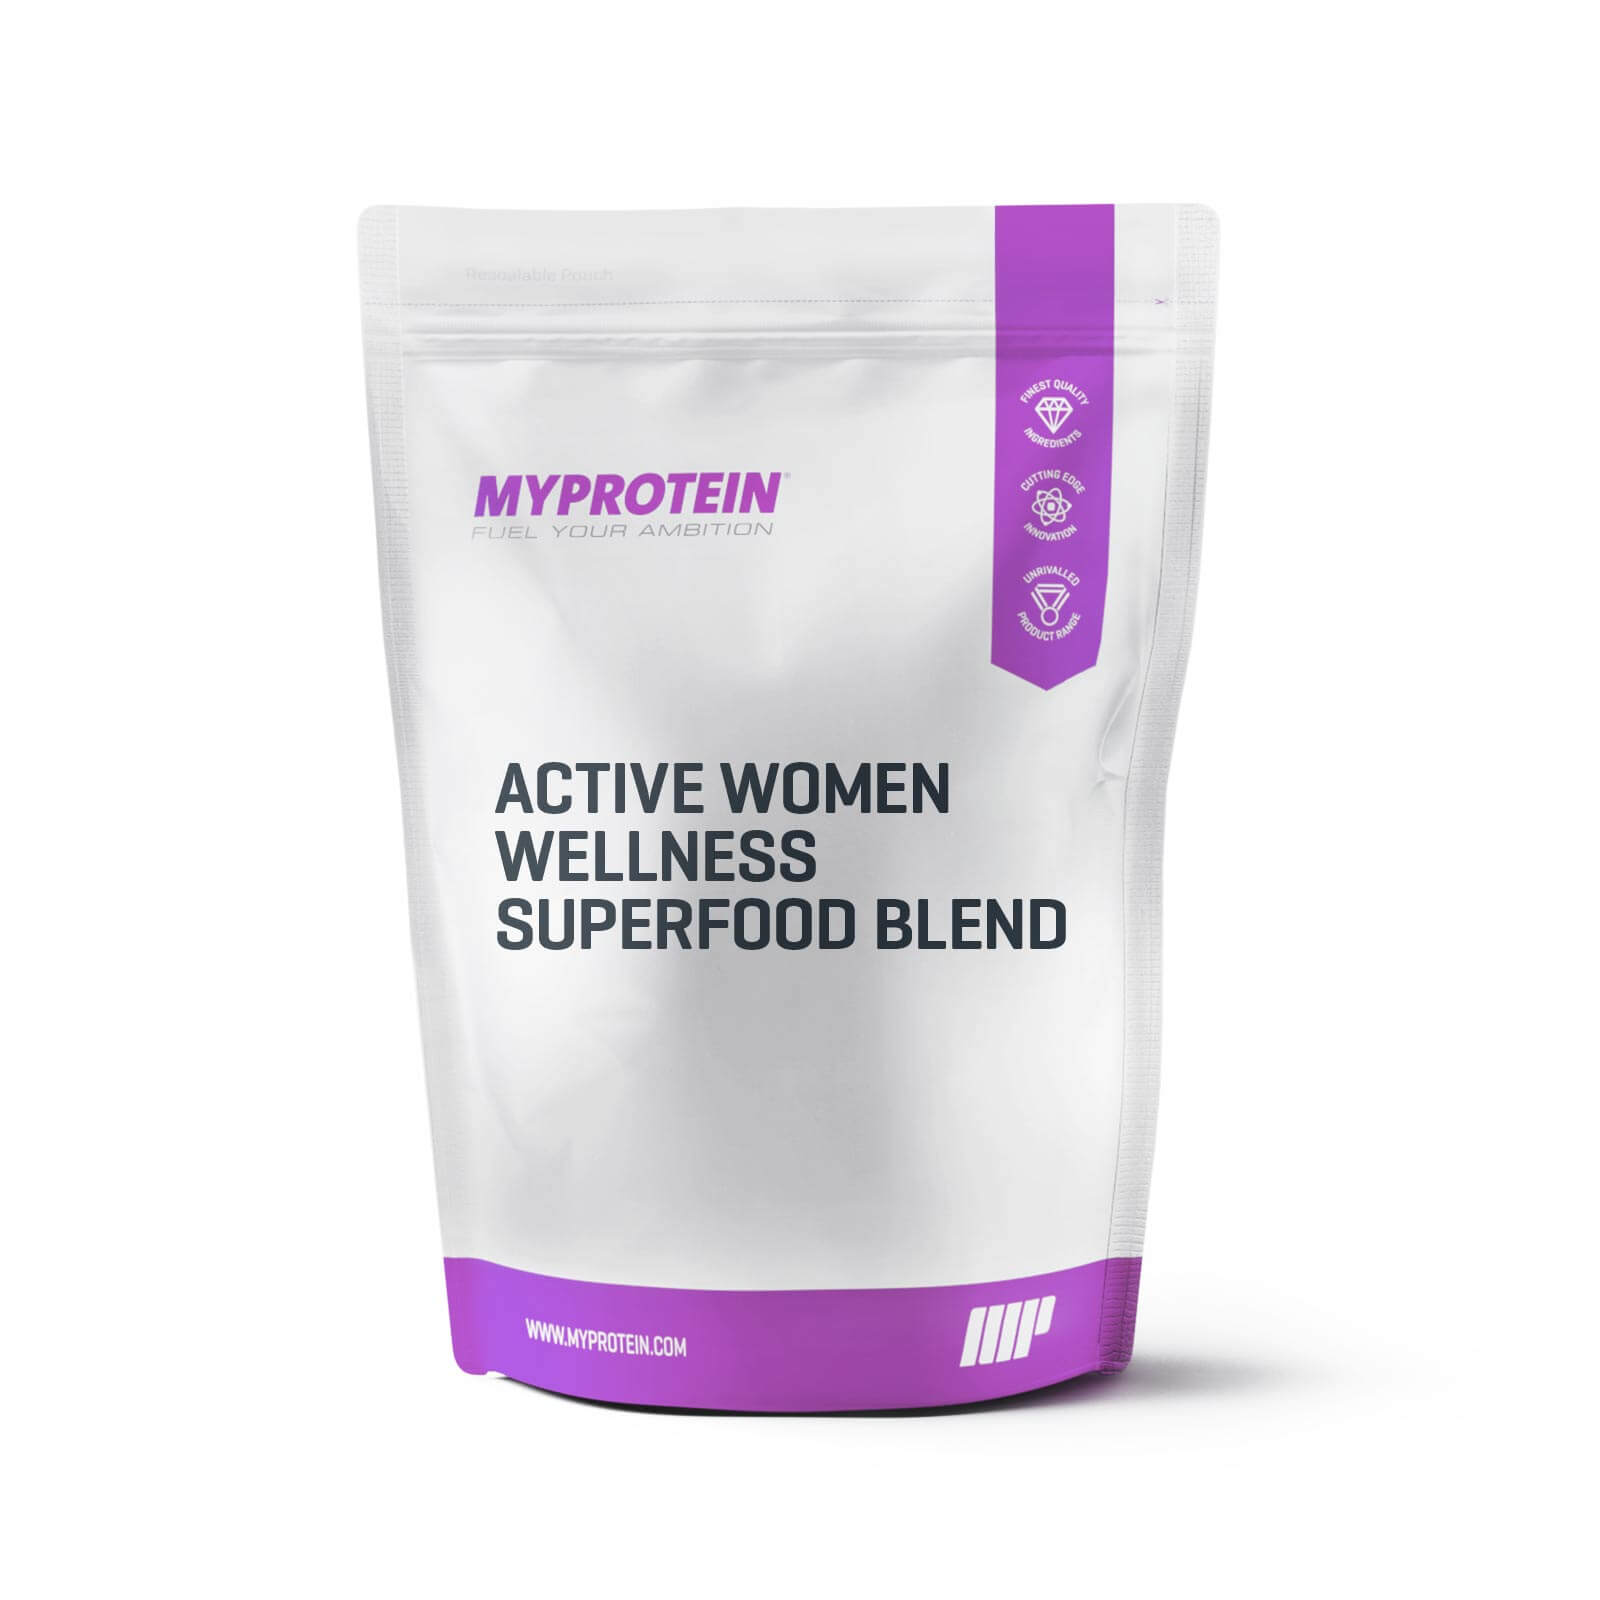 Active Women Wellness Superblend